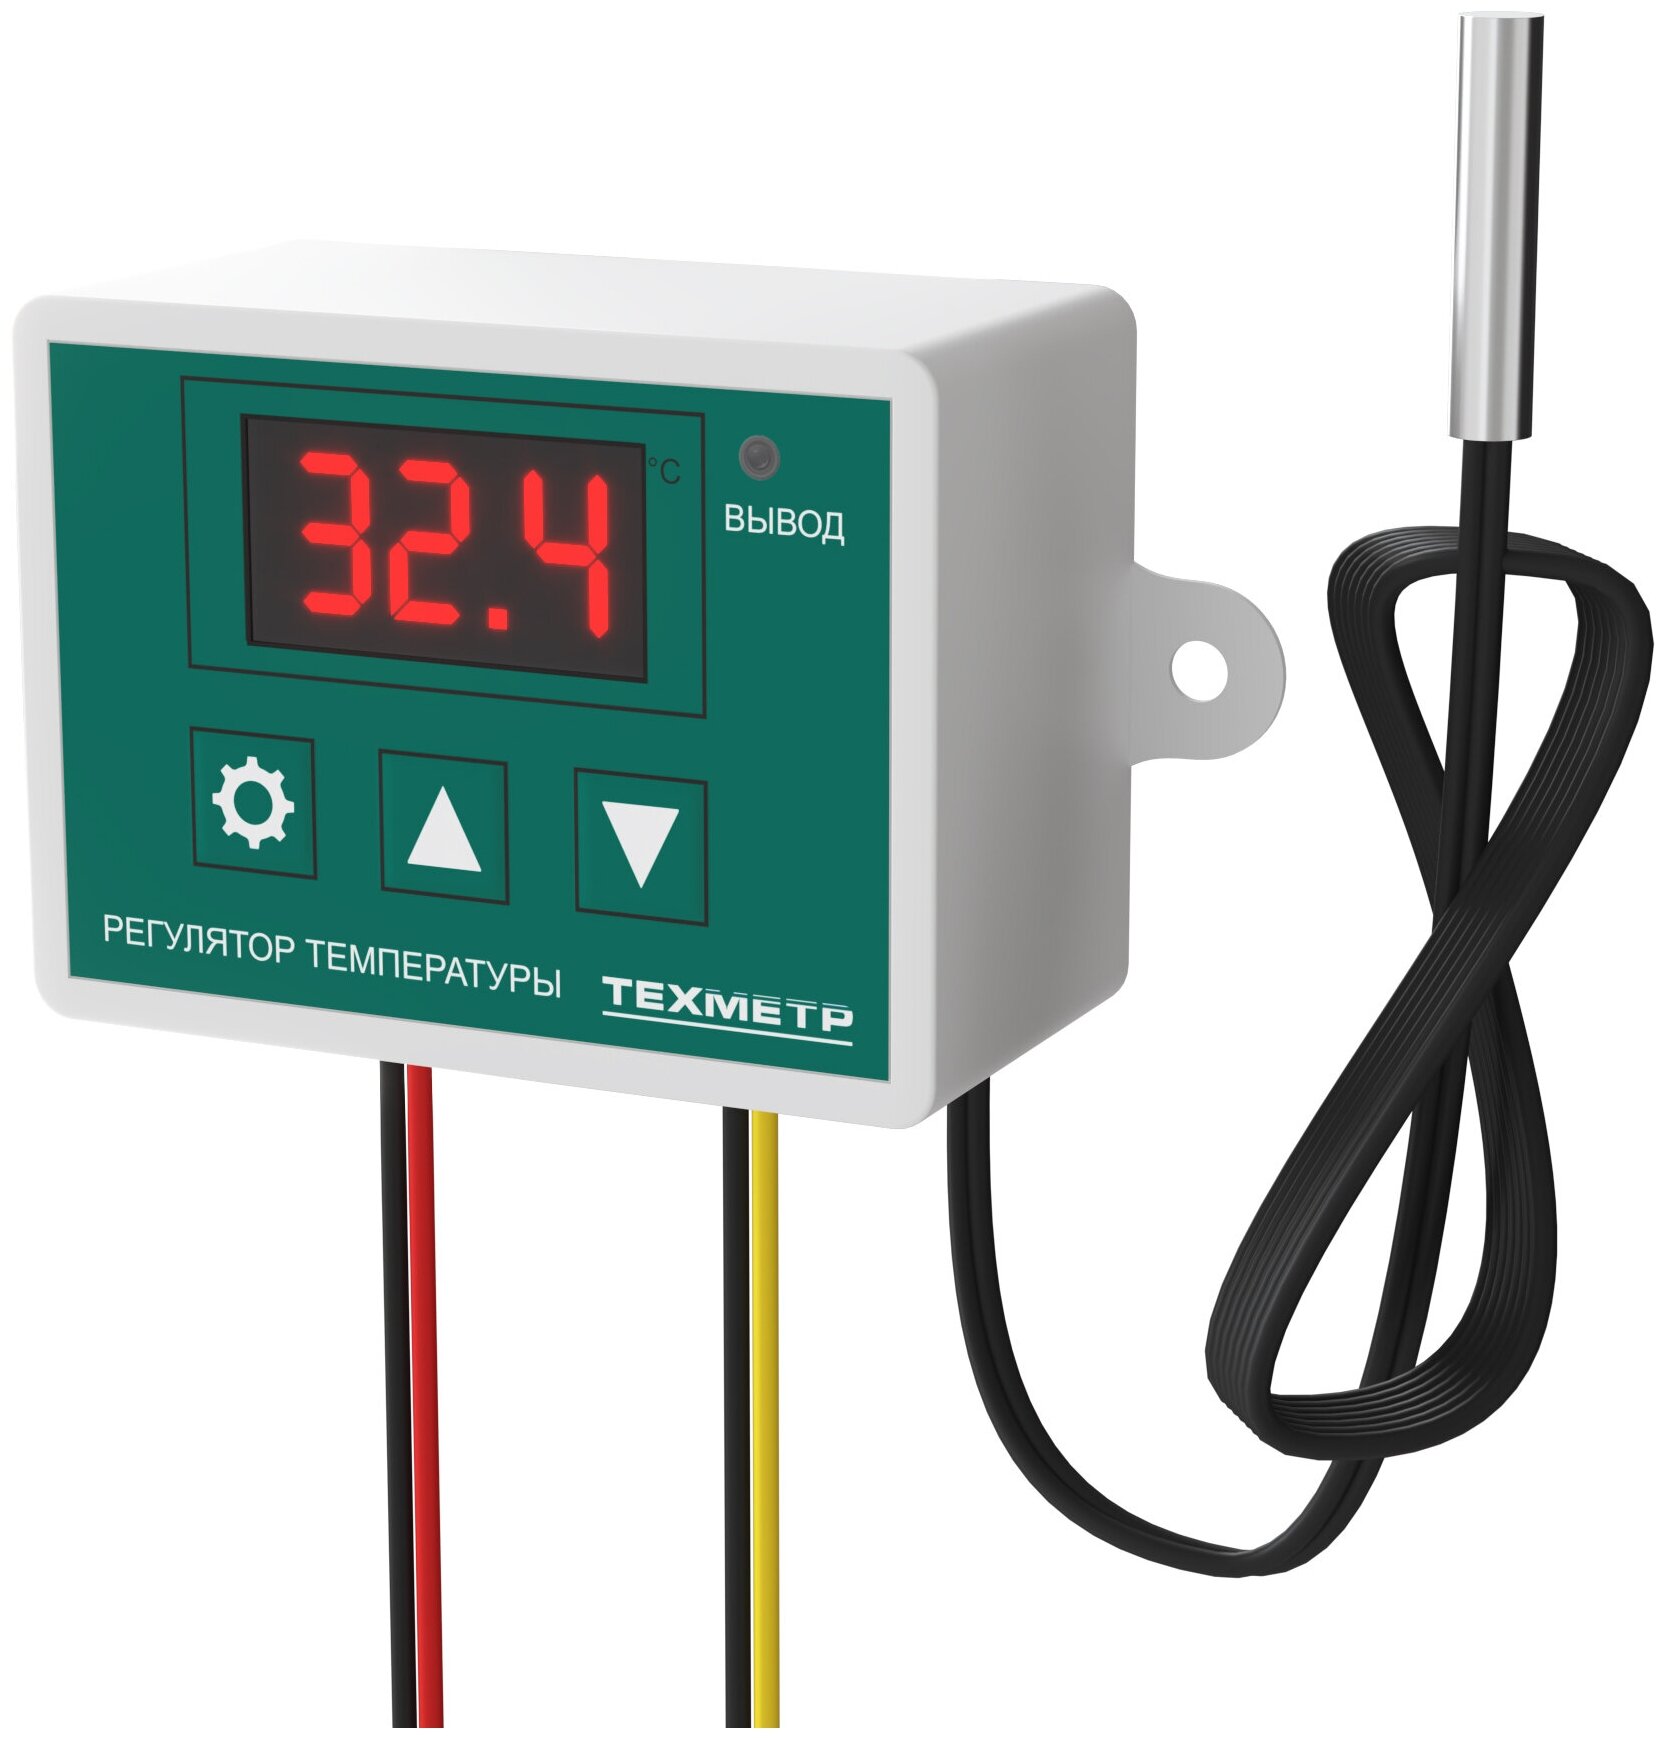 Терморегулятор термостат контроллер температуры для холодильника, инкубатора, брудера, отопления, теплого пола 220В 1500Вт техметр XH-W3002 (Зелёный) - фотография № 7